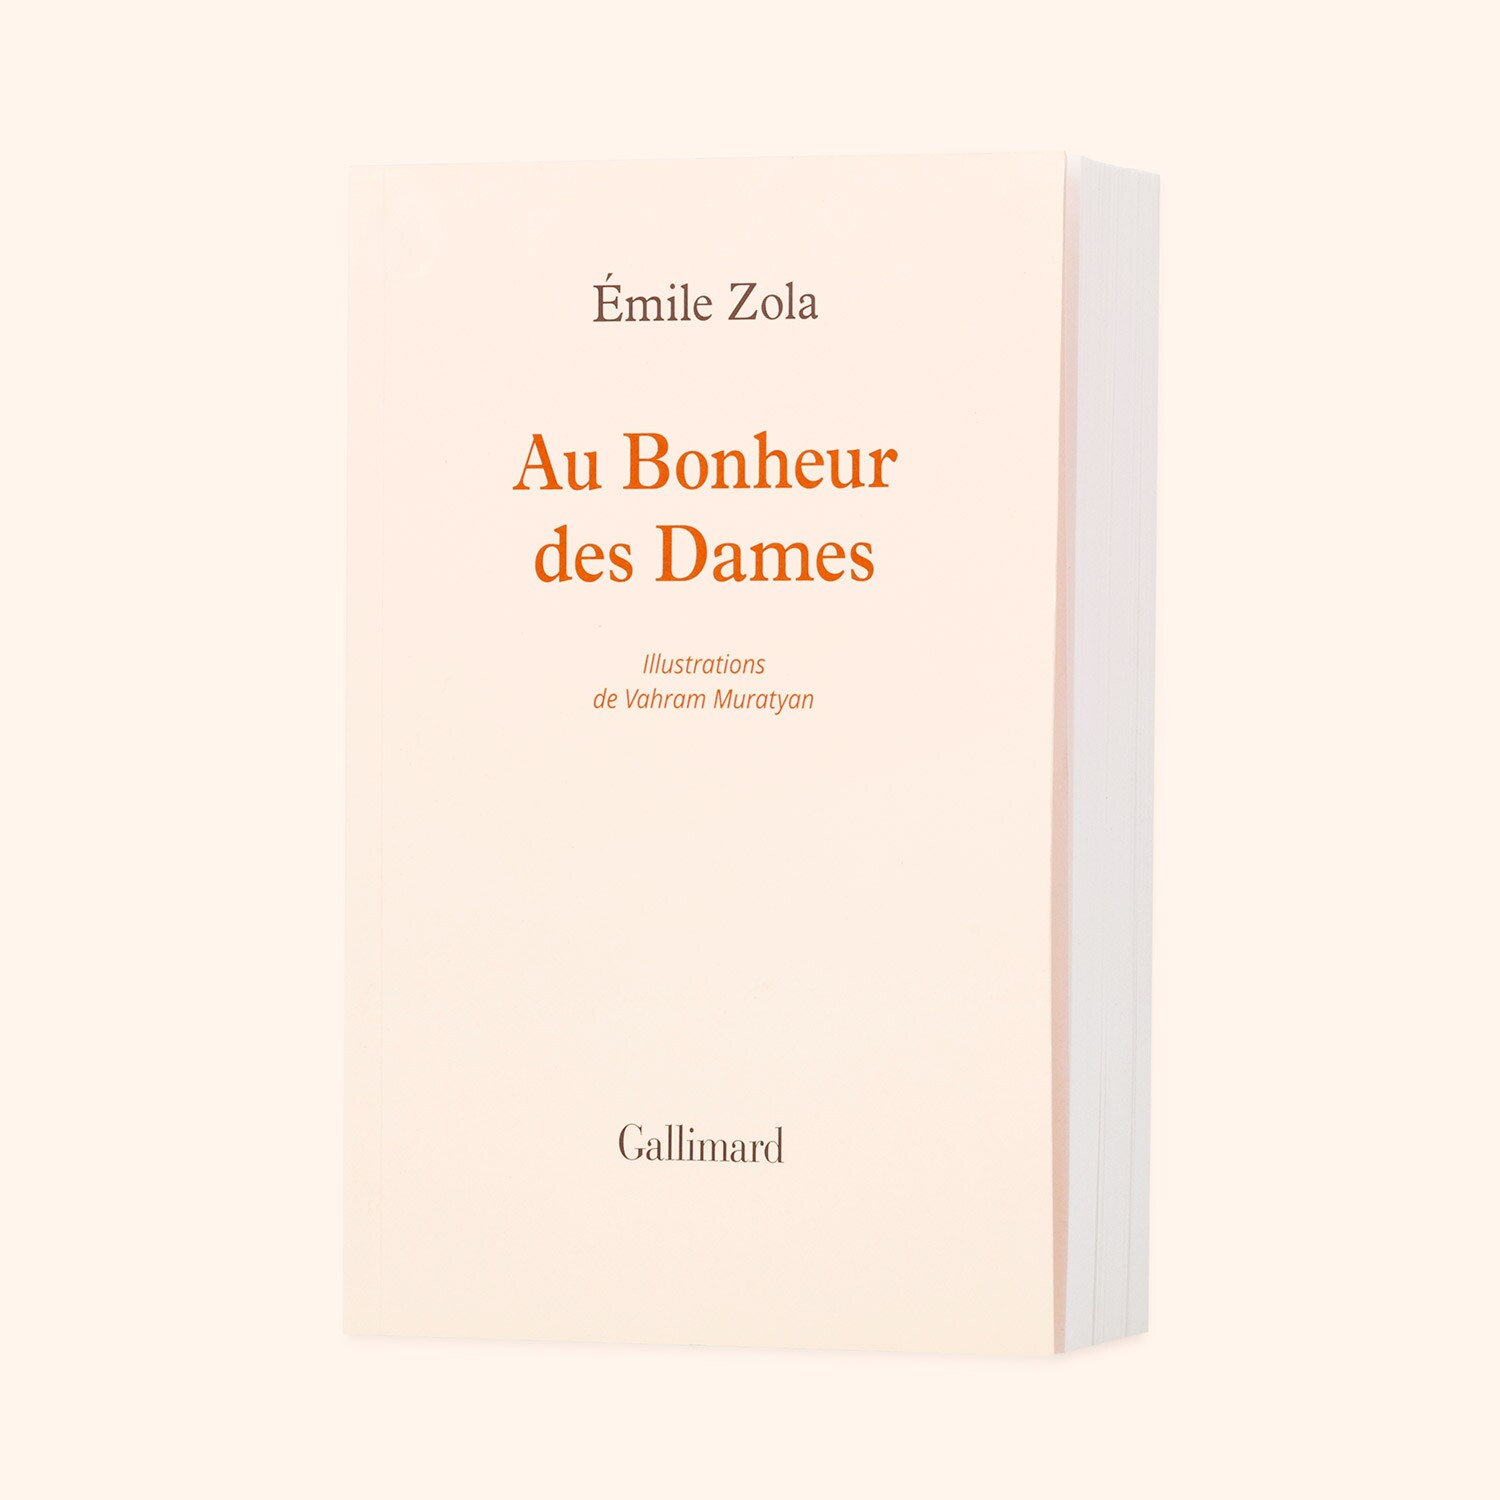 Au Bonheur des Dames - Émile Zola